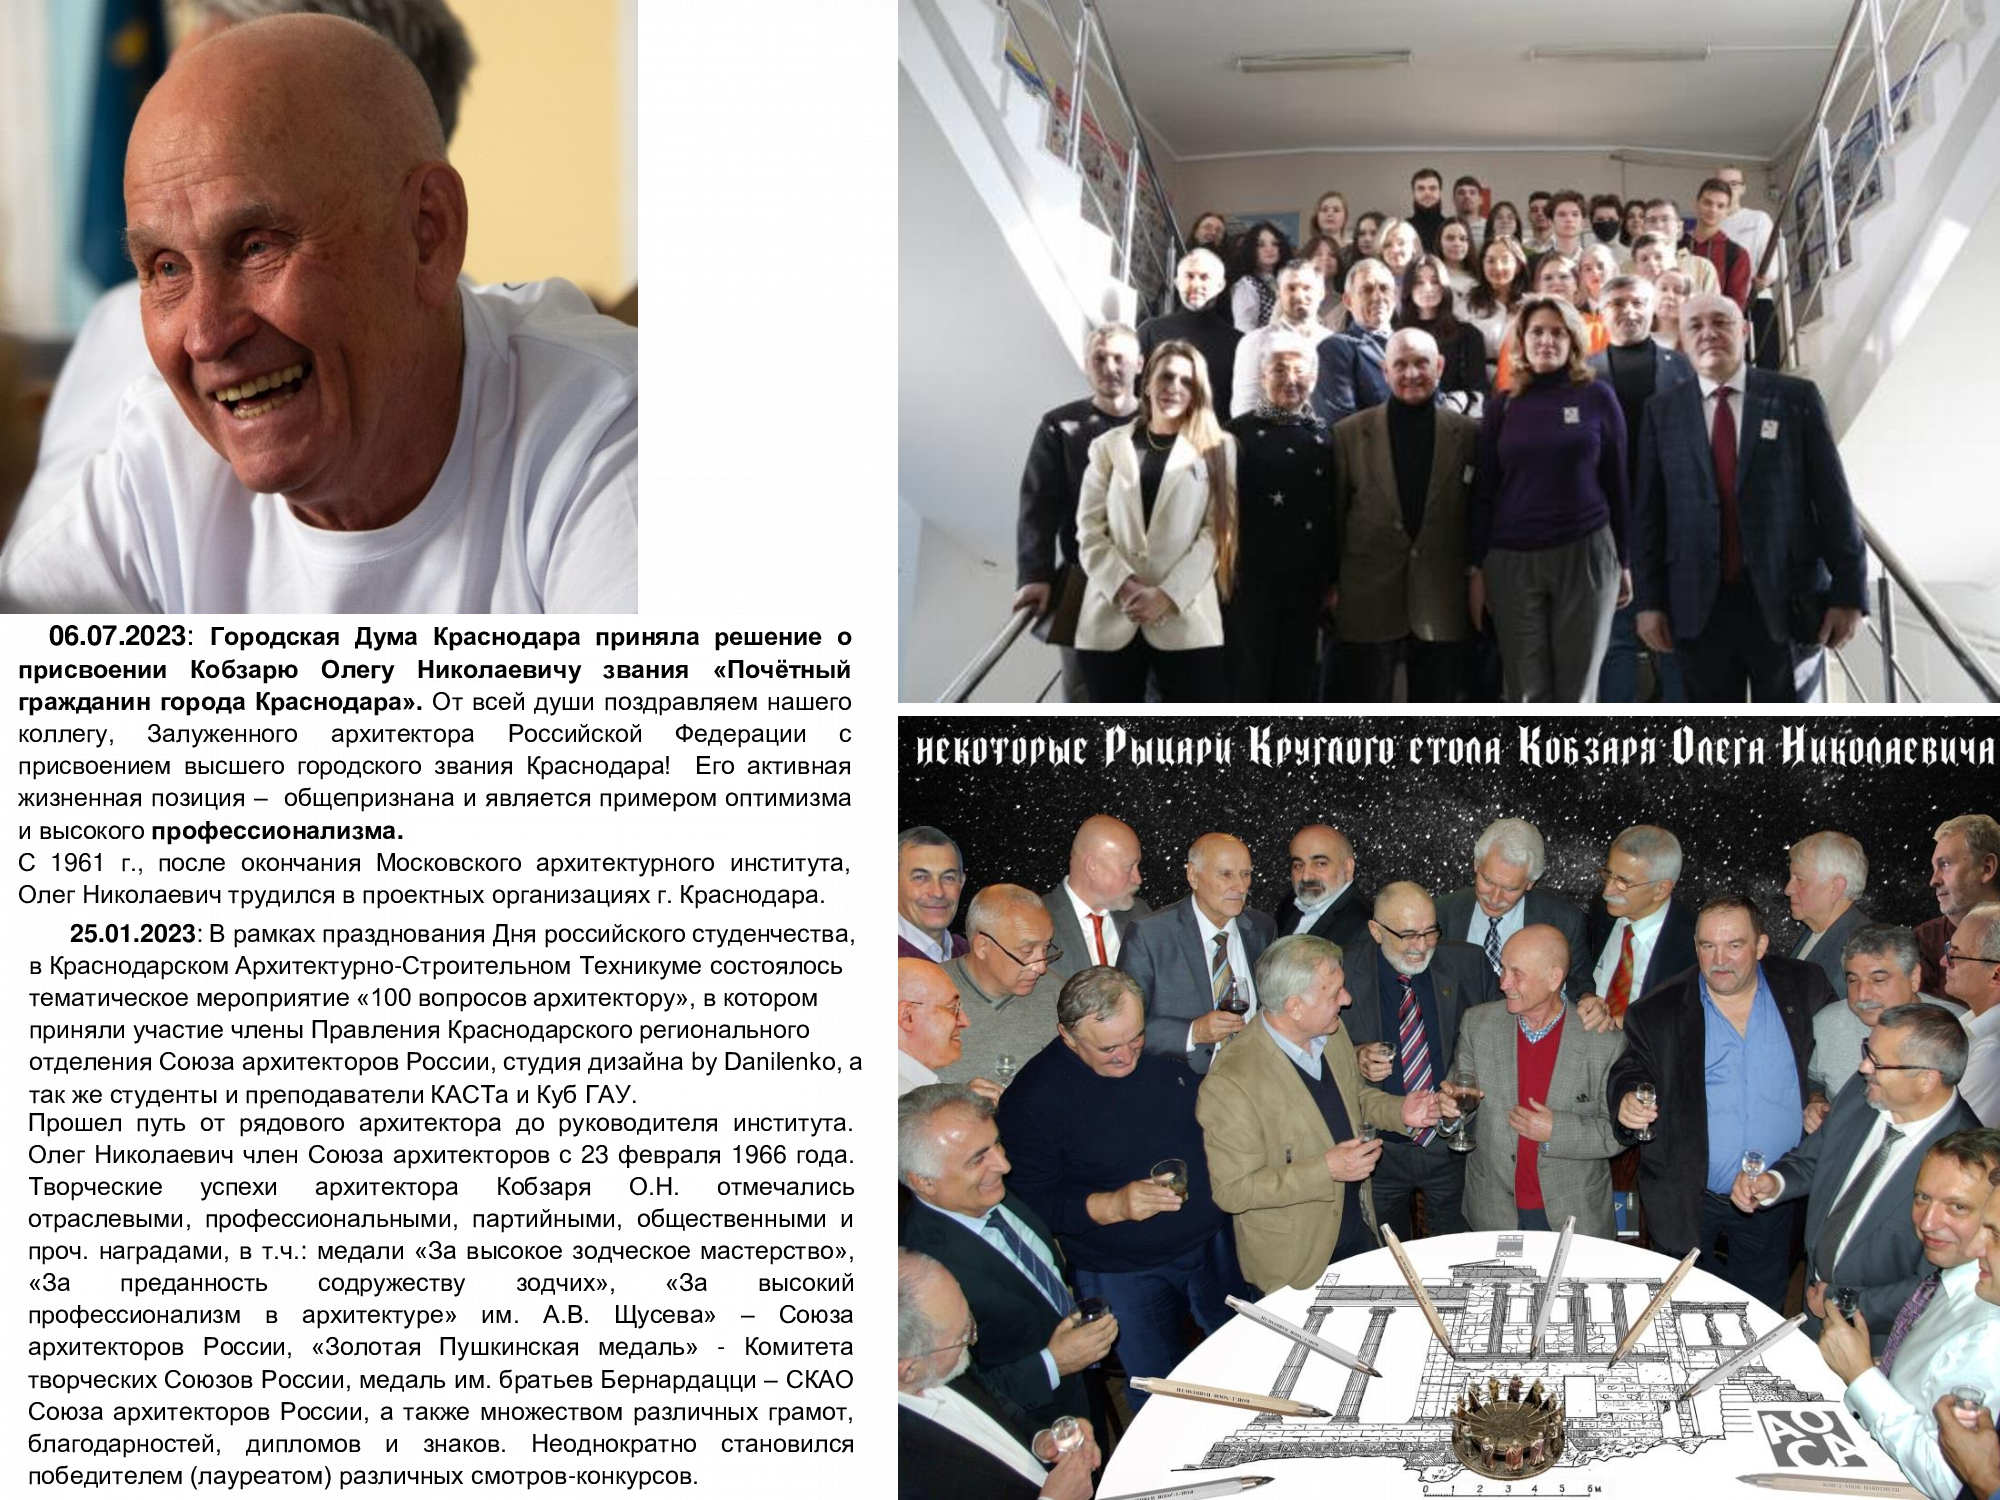 Члены Градостроительного совета приняли участие в Xvi Съезде Союза архитекторов России